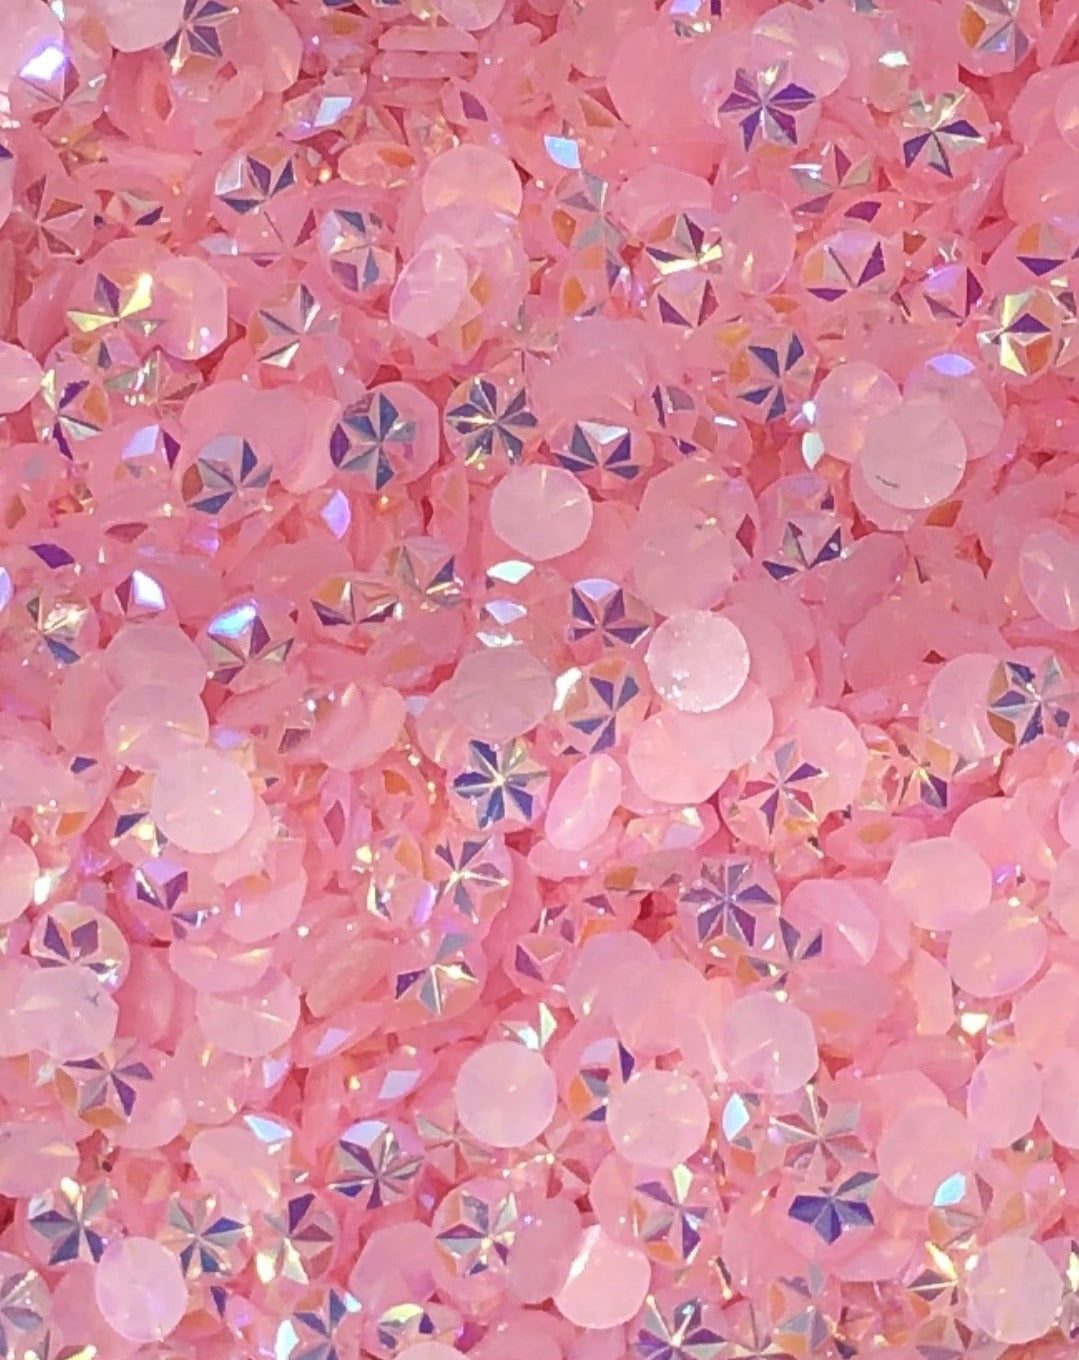 SAMPLE Unique Pink AB Jelly Rhinestones